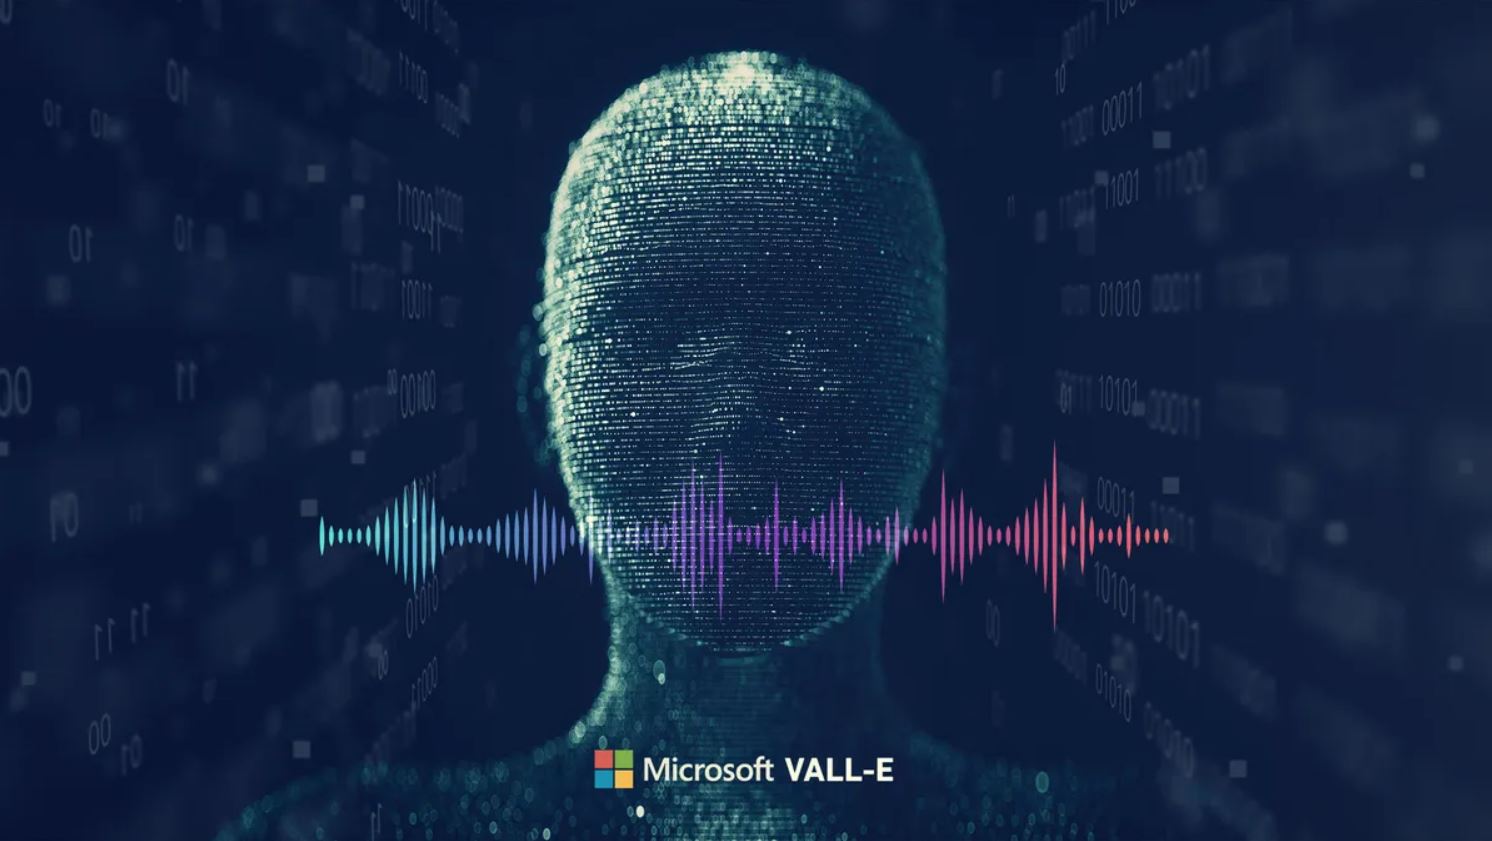 ‘VALL-E’ ปัญญาประดิษฐ์จาก Microsoft สามารถจำลองเสียงใครก็ได้ภายใน 3 วินาที! (มีตัวอย่างเสียง)